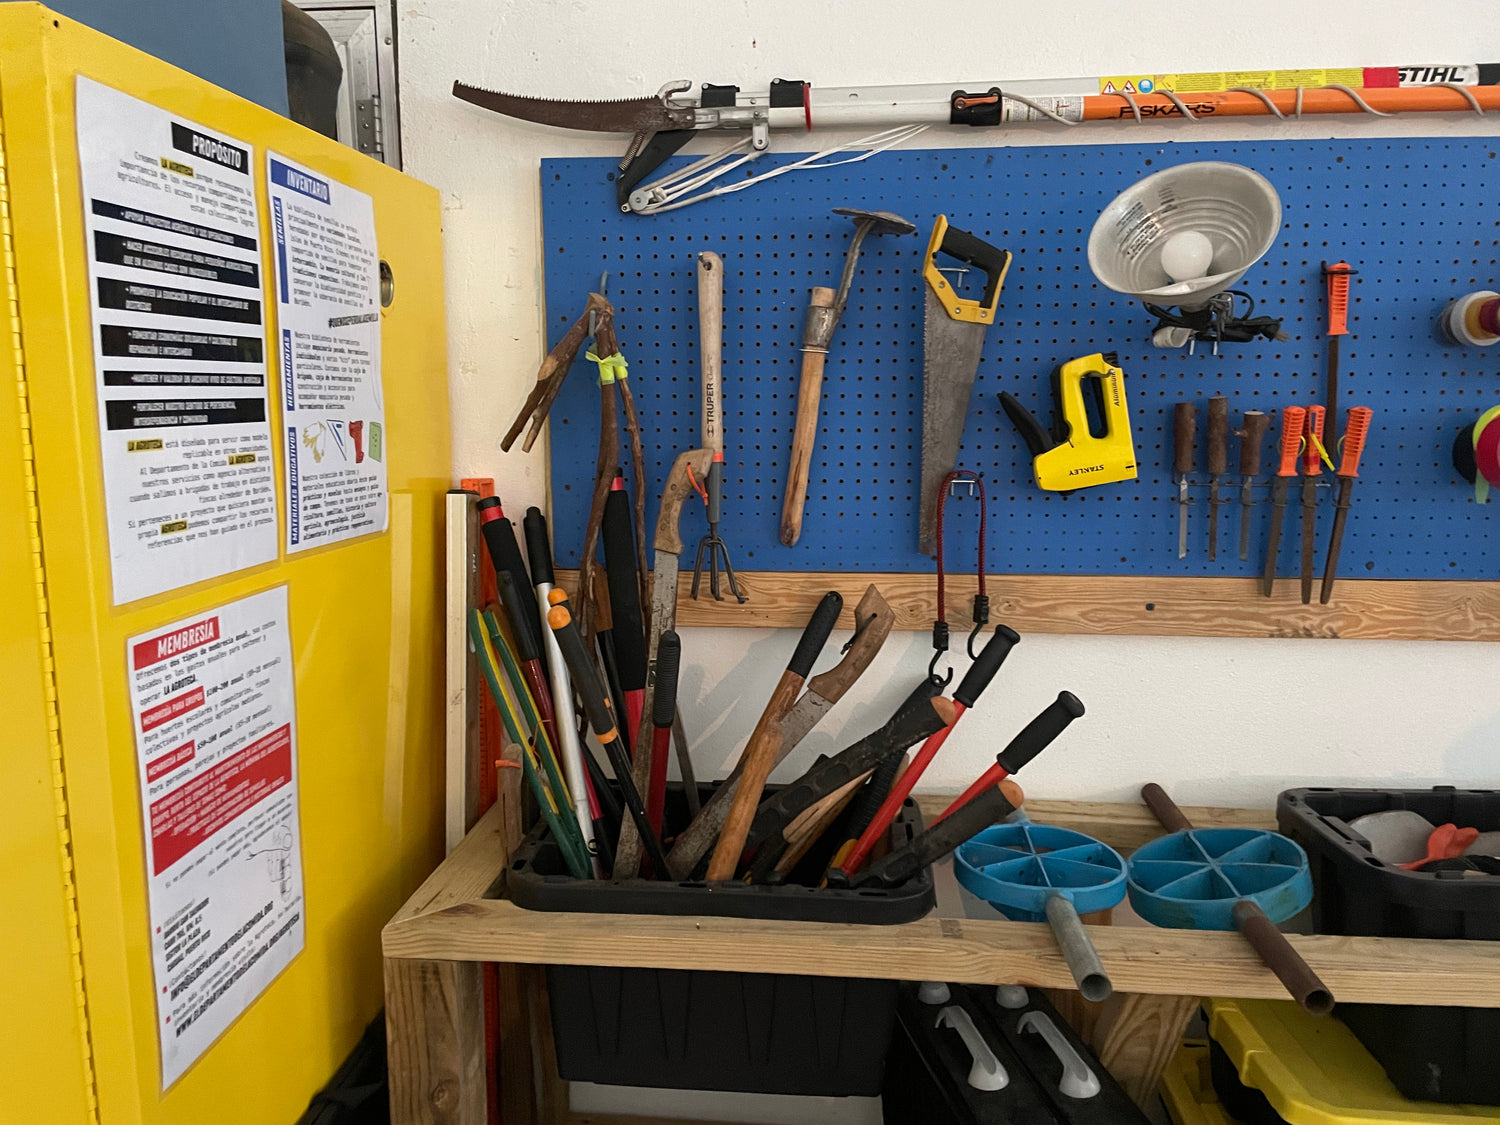 Imagen de herramientas como machetes, segueta y tijeras que ofrece el programa de la agroteca.